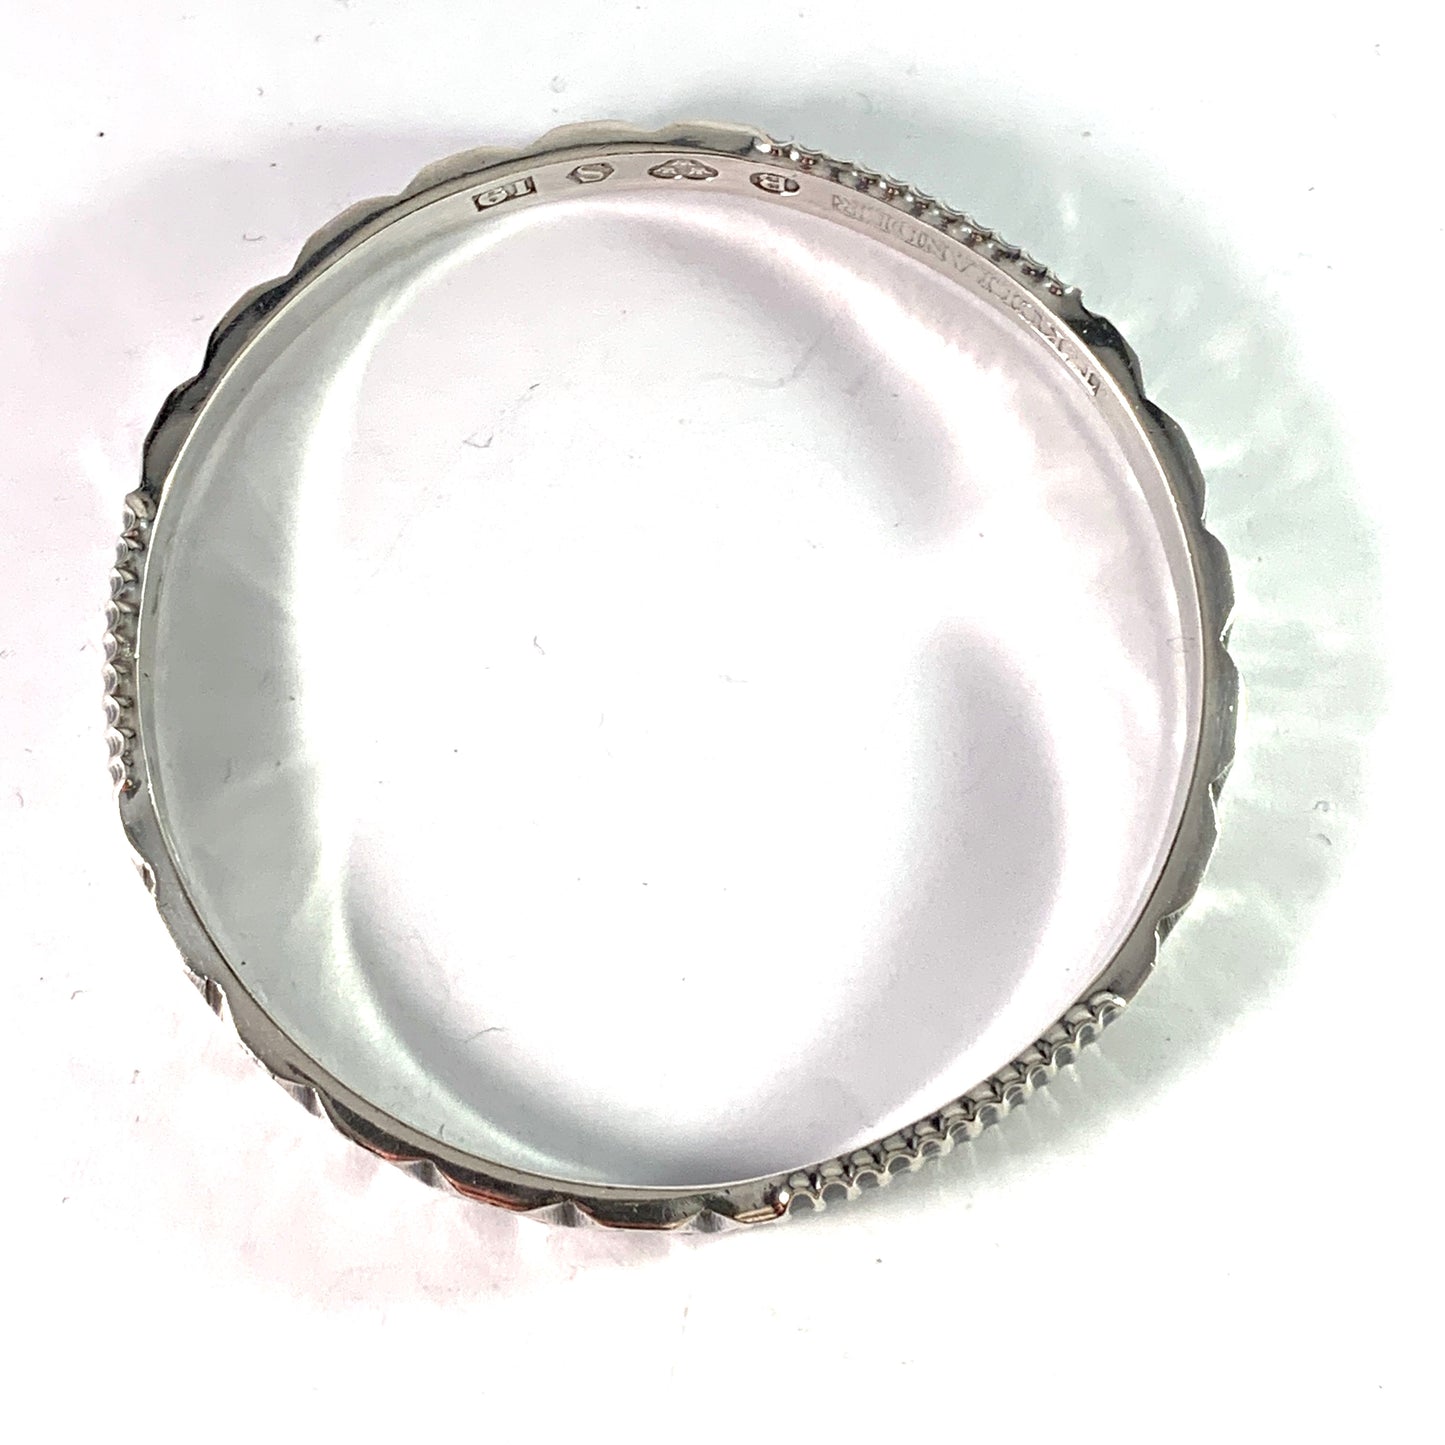 Tore Kullander, Sweden 1959. Mid Century Modern Sterling Silver Bangle Bracelet